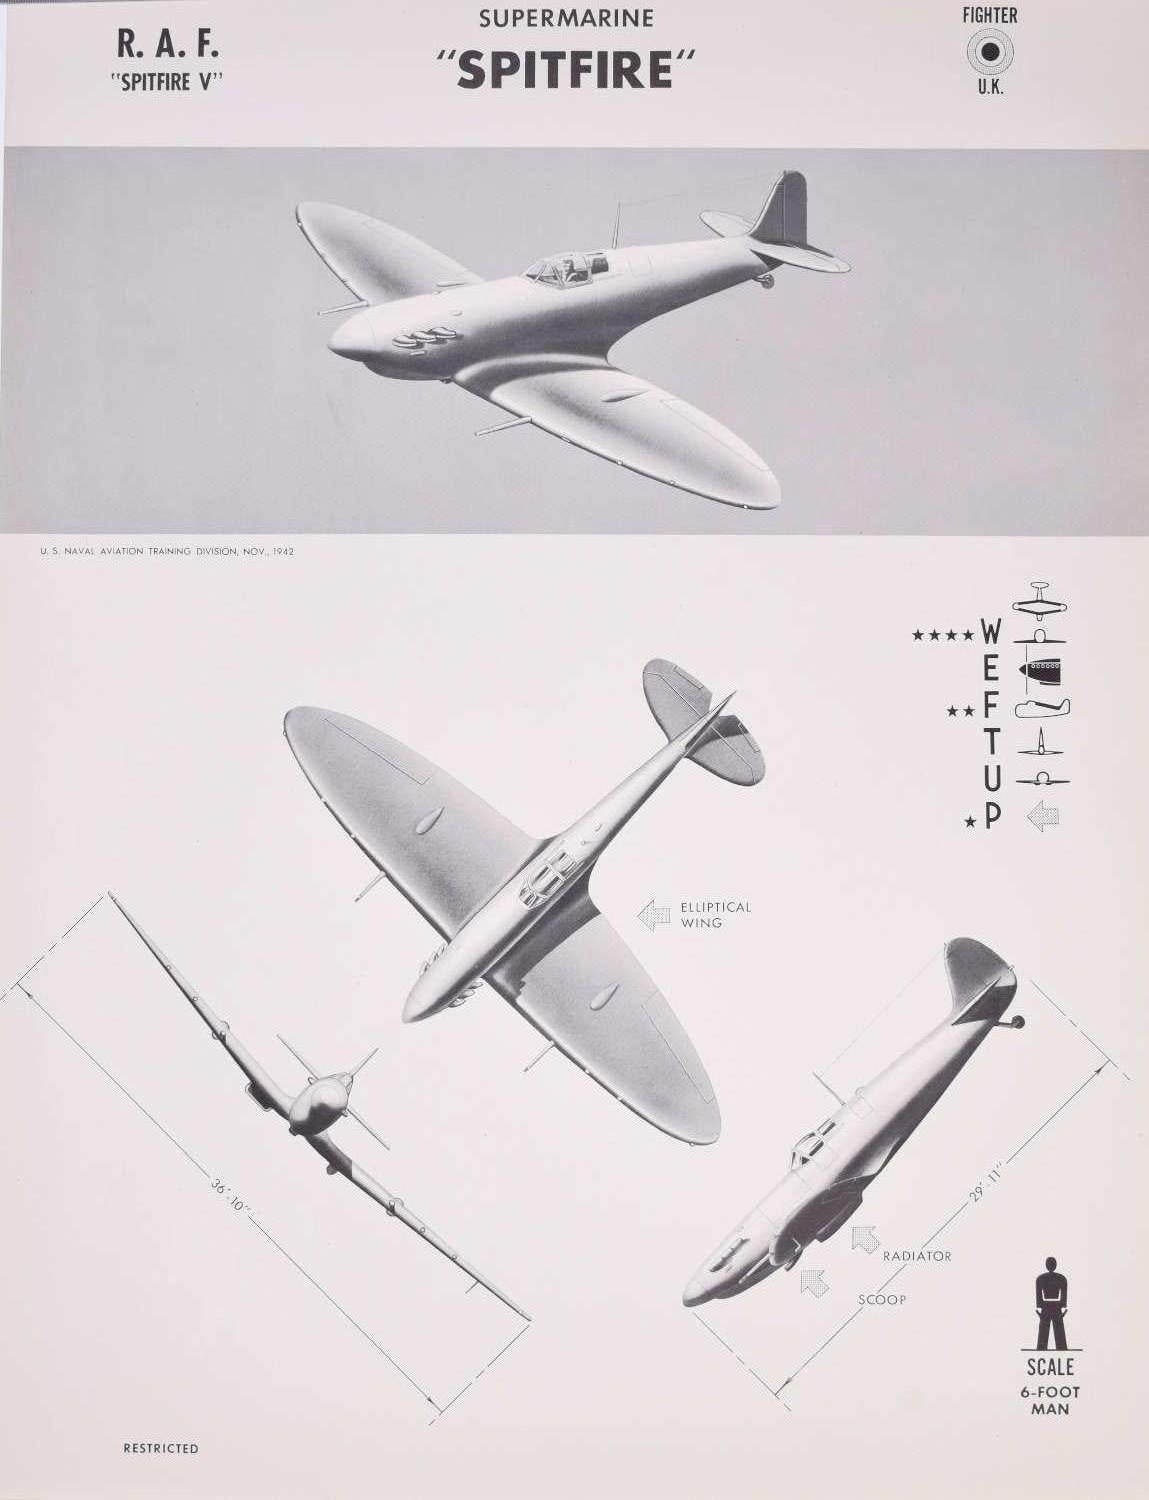 Affiche de reconnaissance d'avions de la Royal Air Force datant de 1943, Spitfire Fighter, datant de la Seconde Guerre mondiale, États-Unis Navy